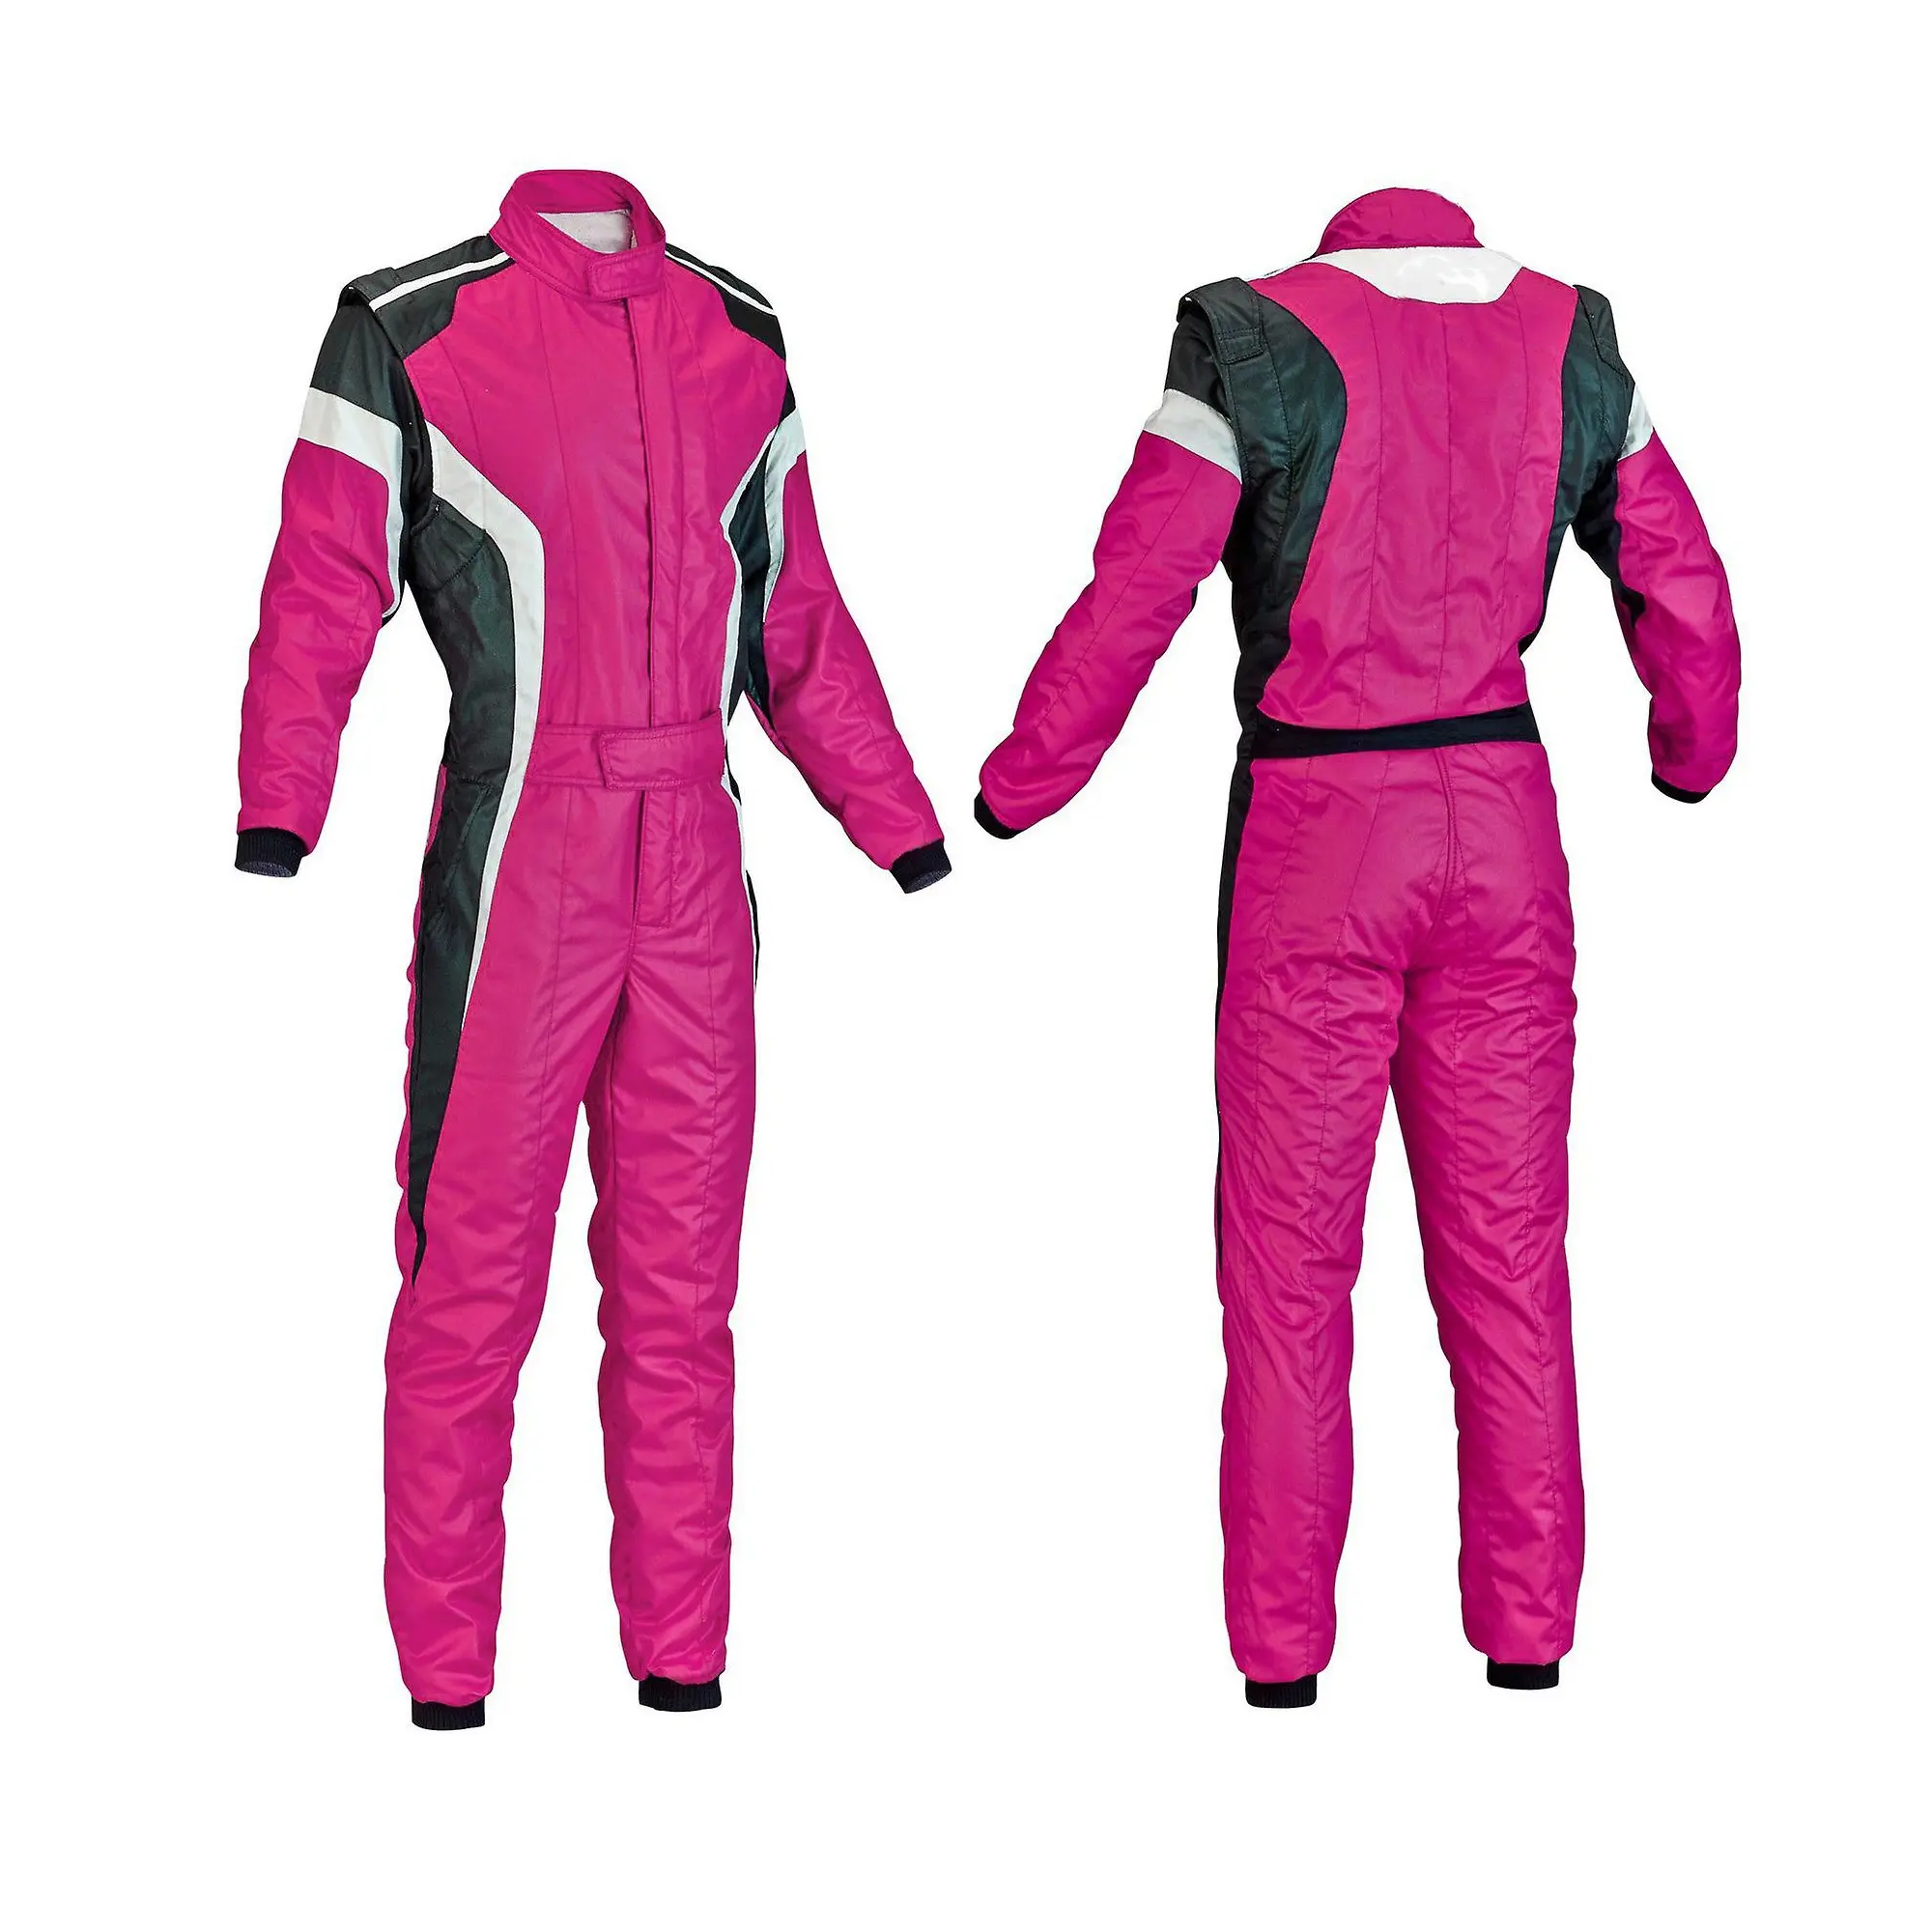 ספורט ללכת kart מירוץ עגלת karting חליפה צבעים מותאמים אישית מרוצה Kart חליפות ספק איכות הטובה ביותר